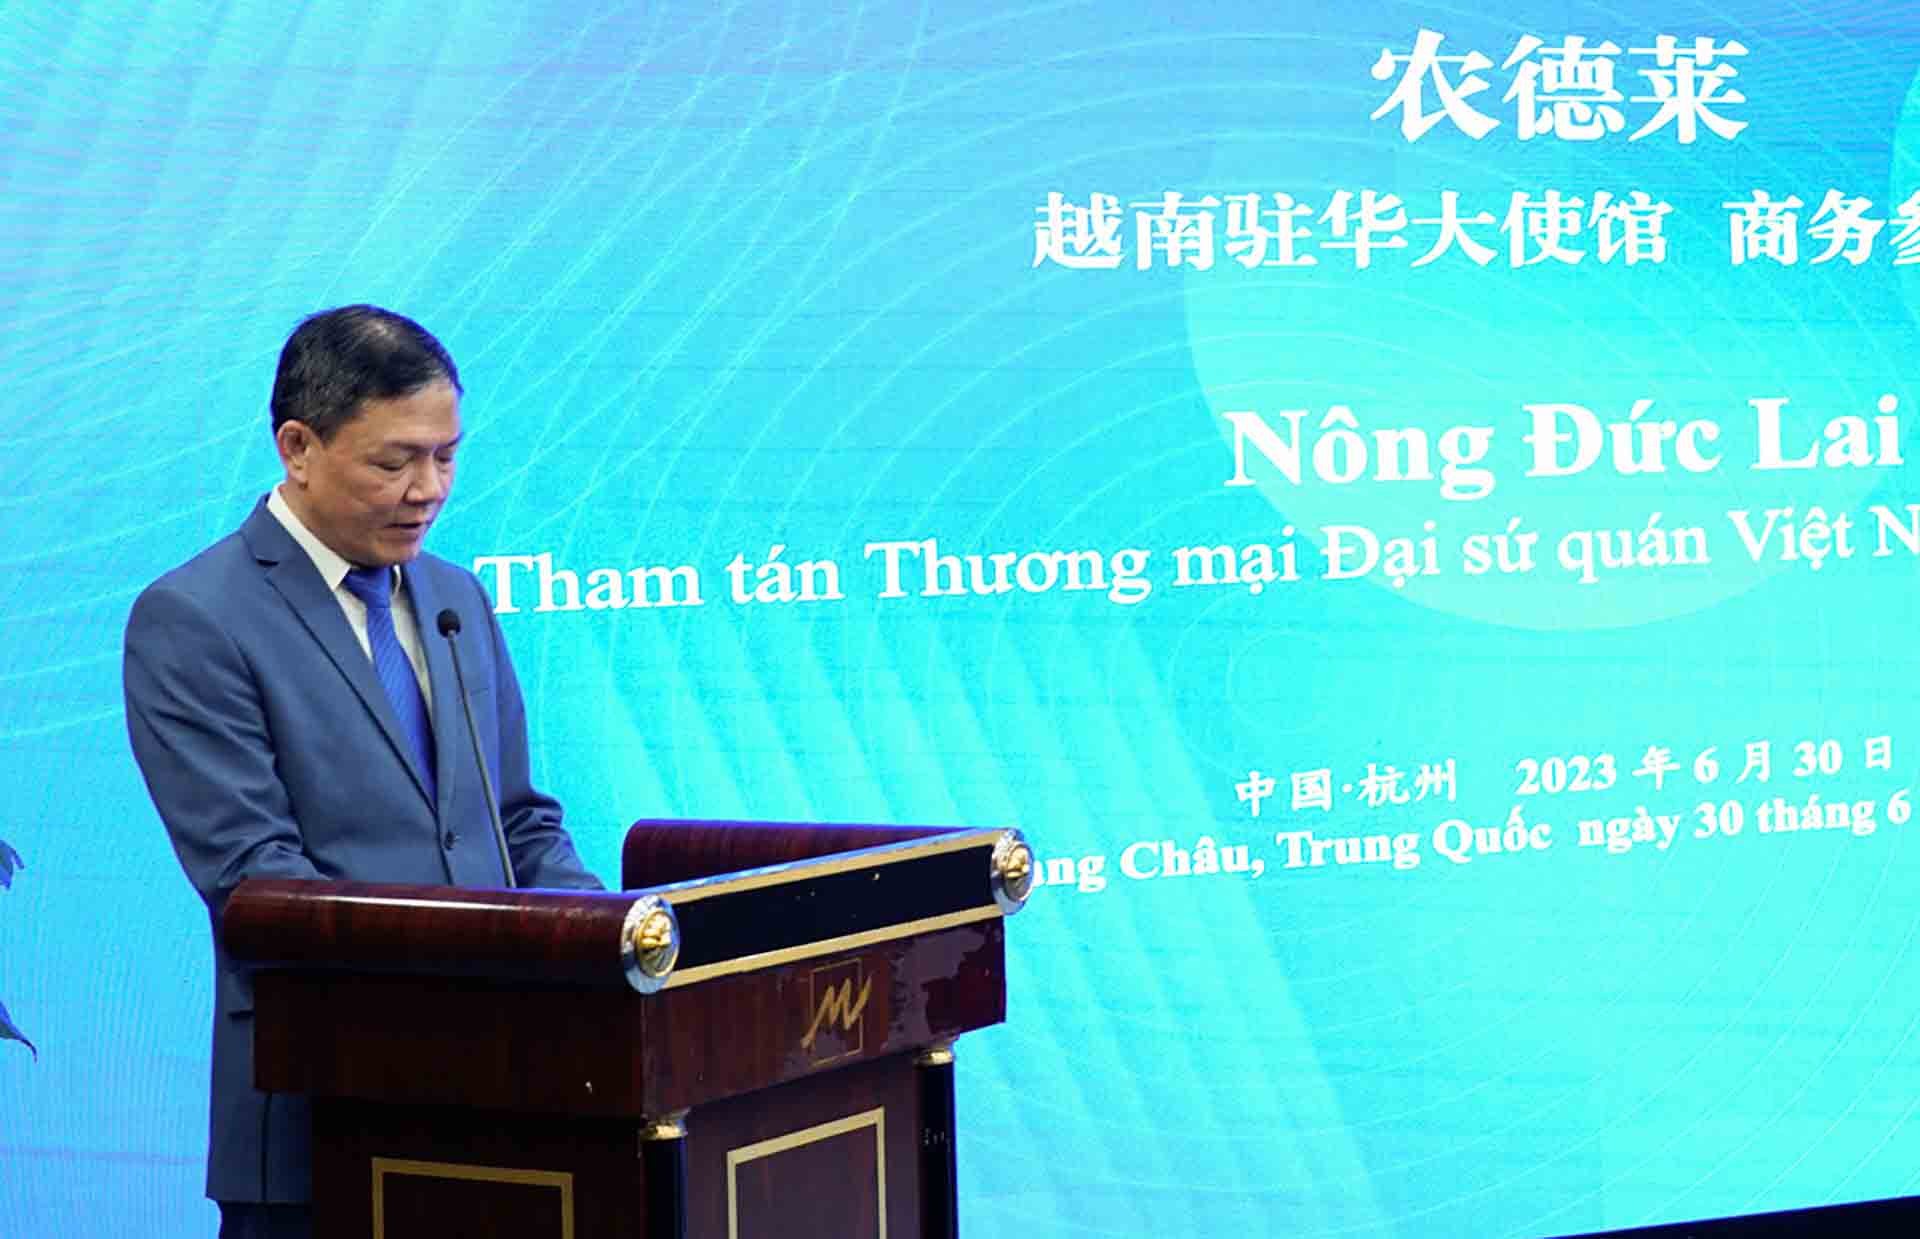 Tham tán Thương mại Việt Nam tại Trung Quốc Nông Đức Lai phát biểu.